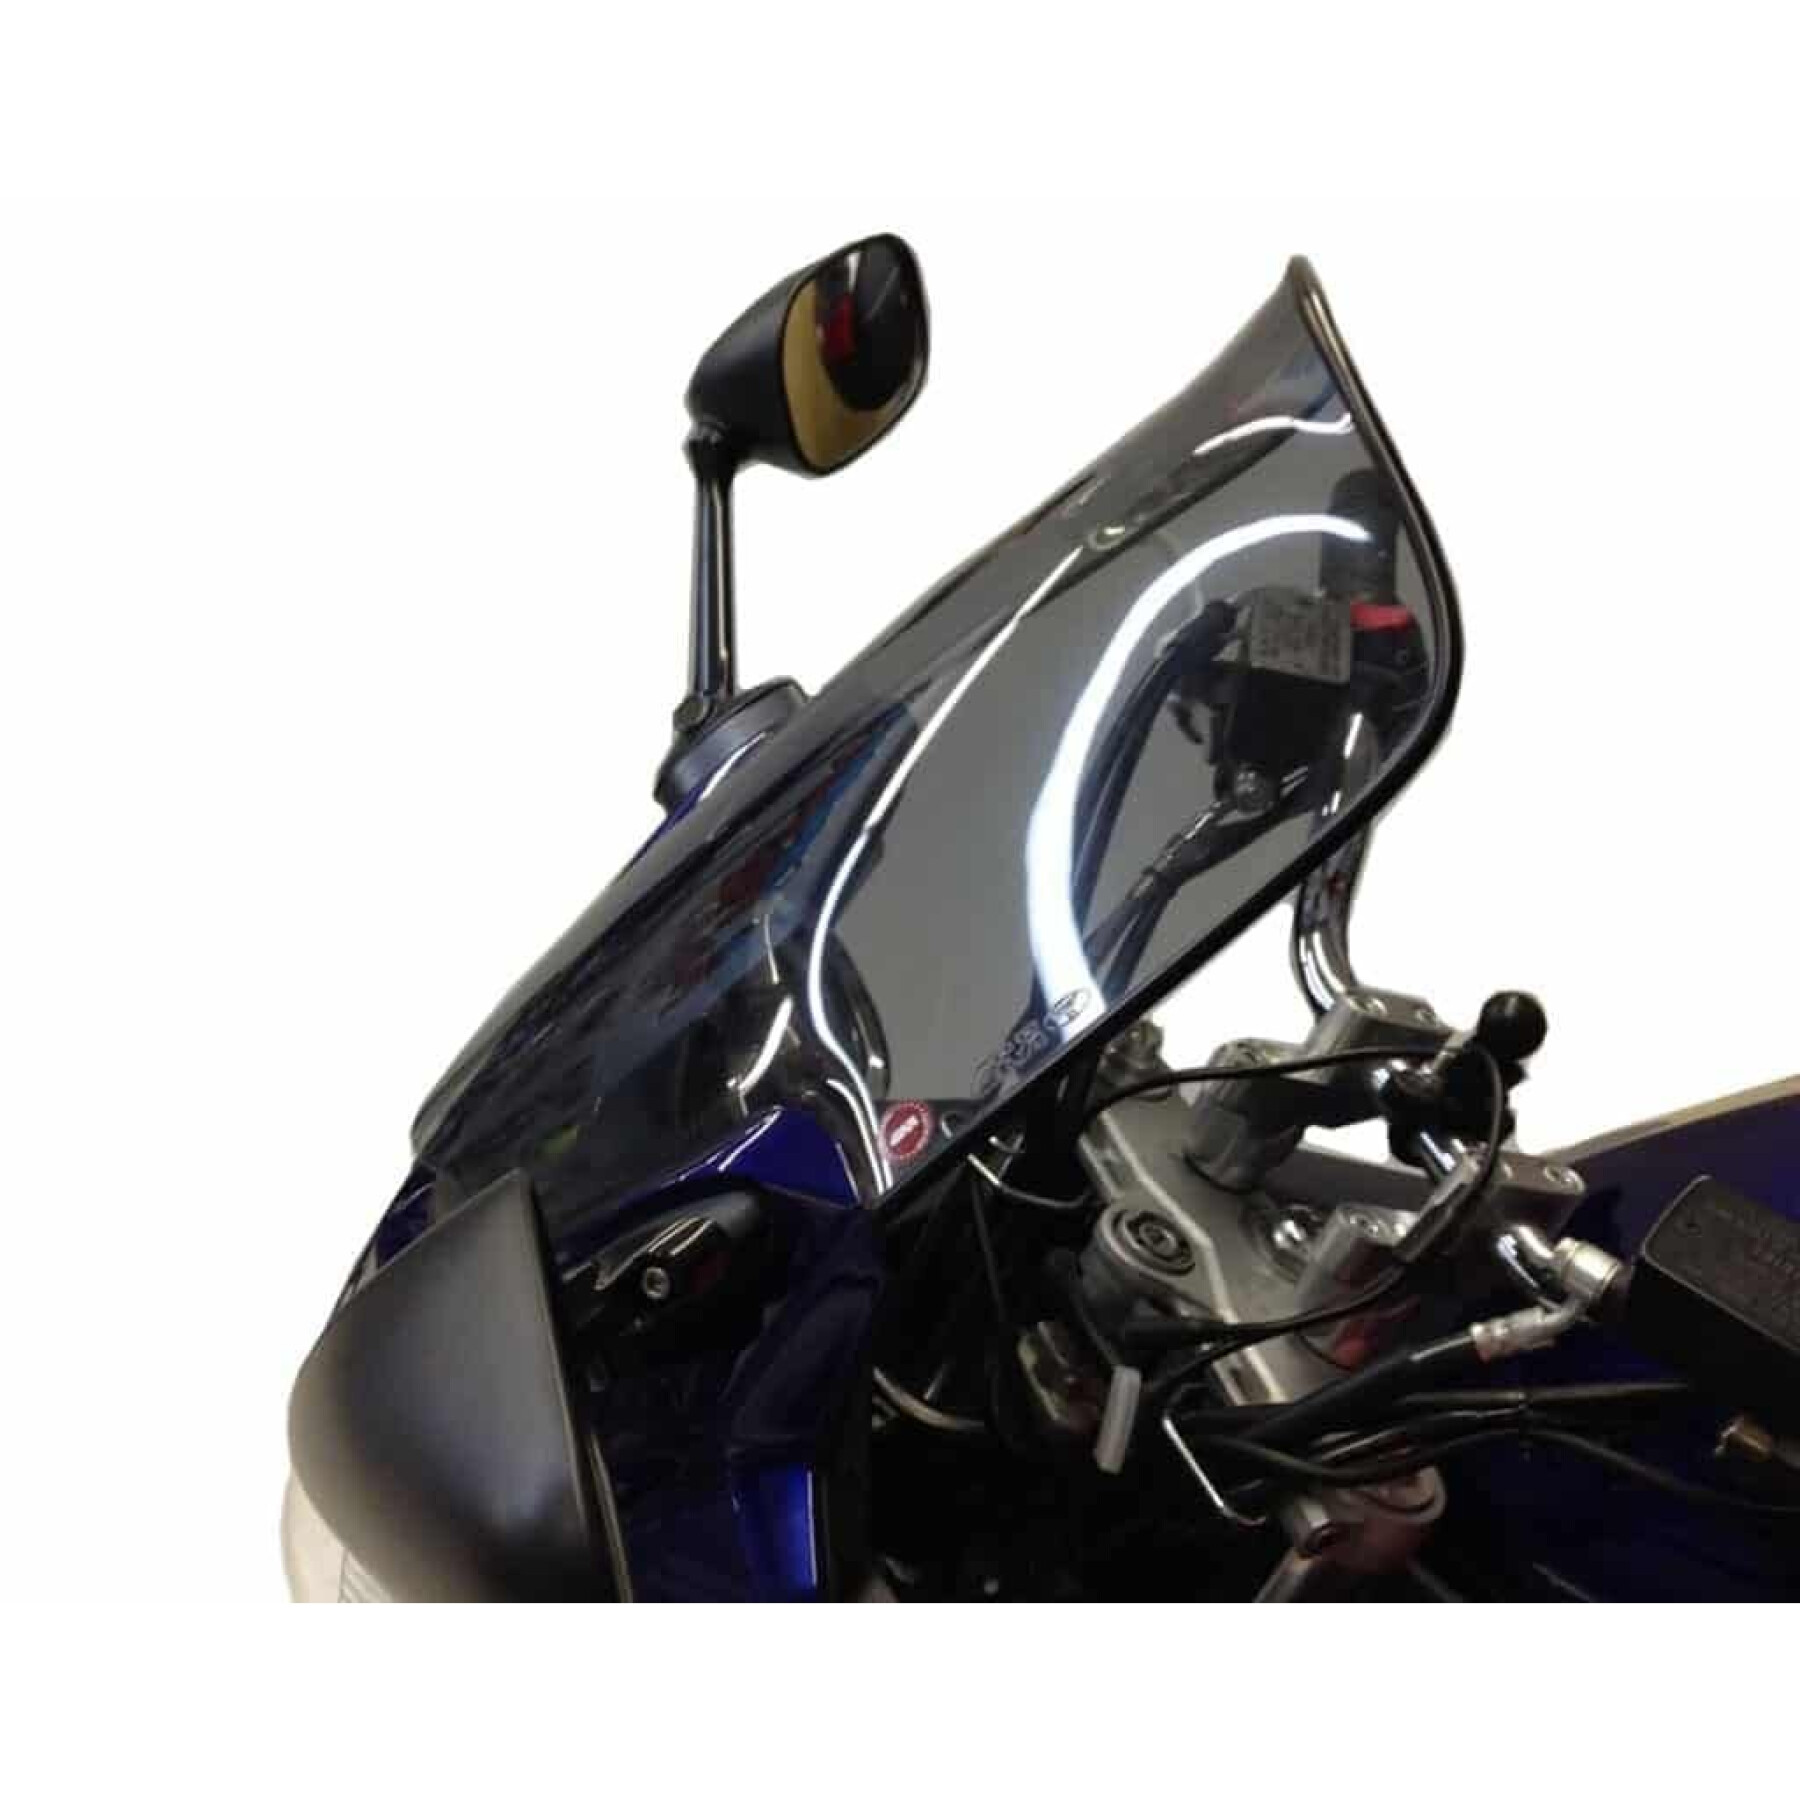 Bolha de motocicleta Givi Suzuki Gsf Bandit/Bandit1200 S (2006) / 1250 (2007 À 2011) / 650 ABS (2005 À 2006) / K7-K8 (2007 À 2011)